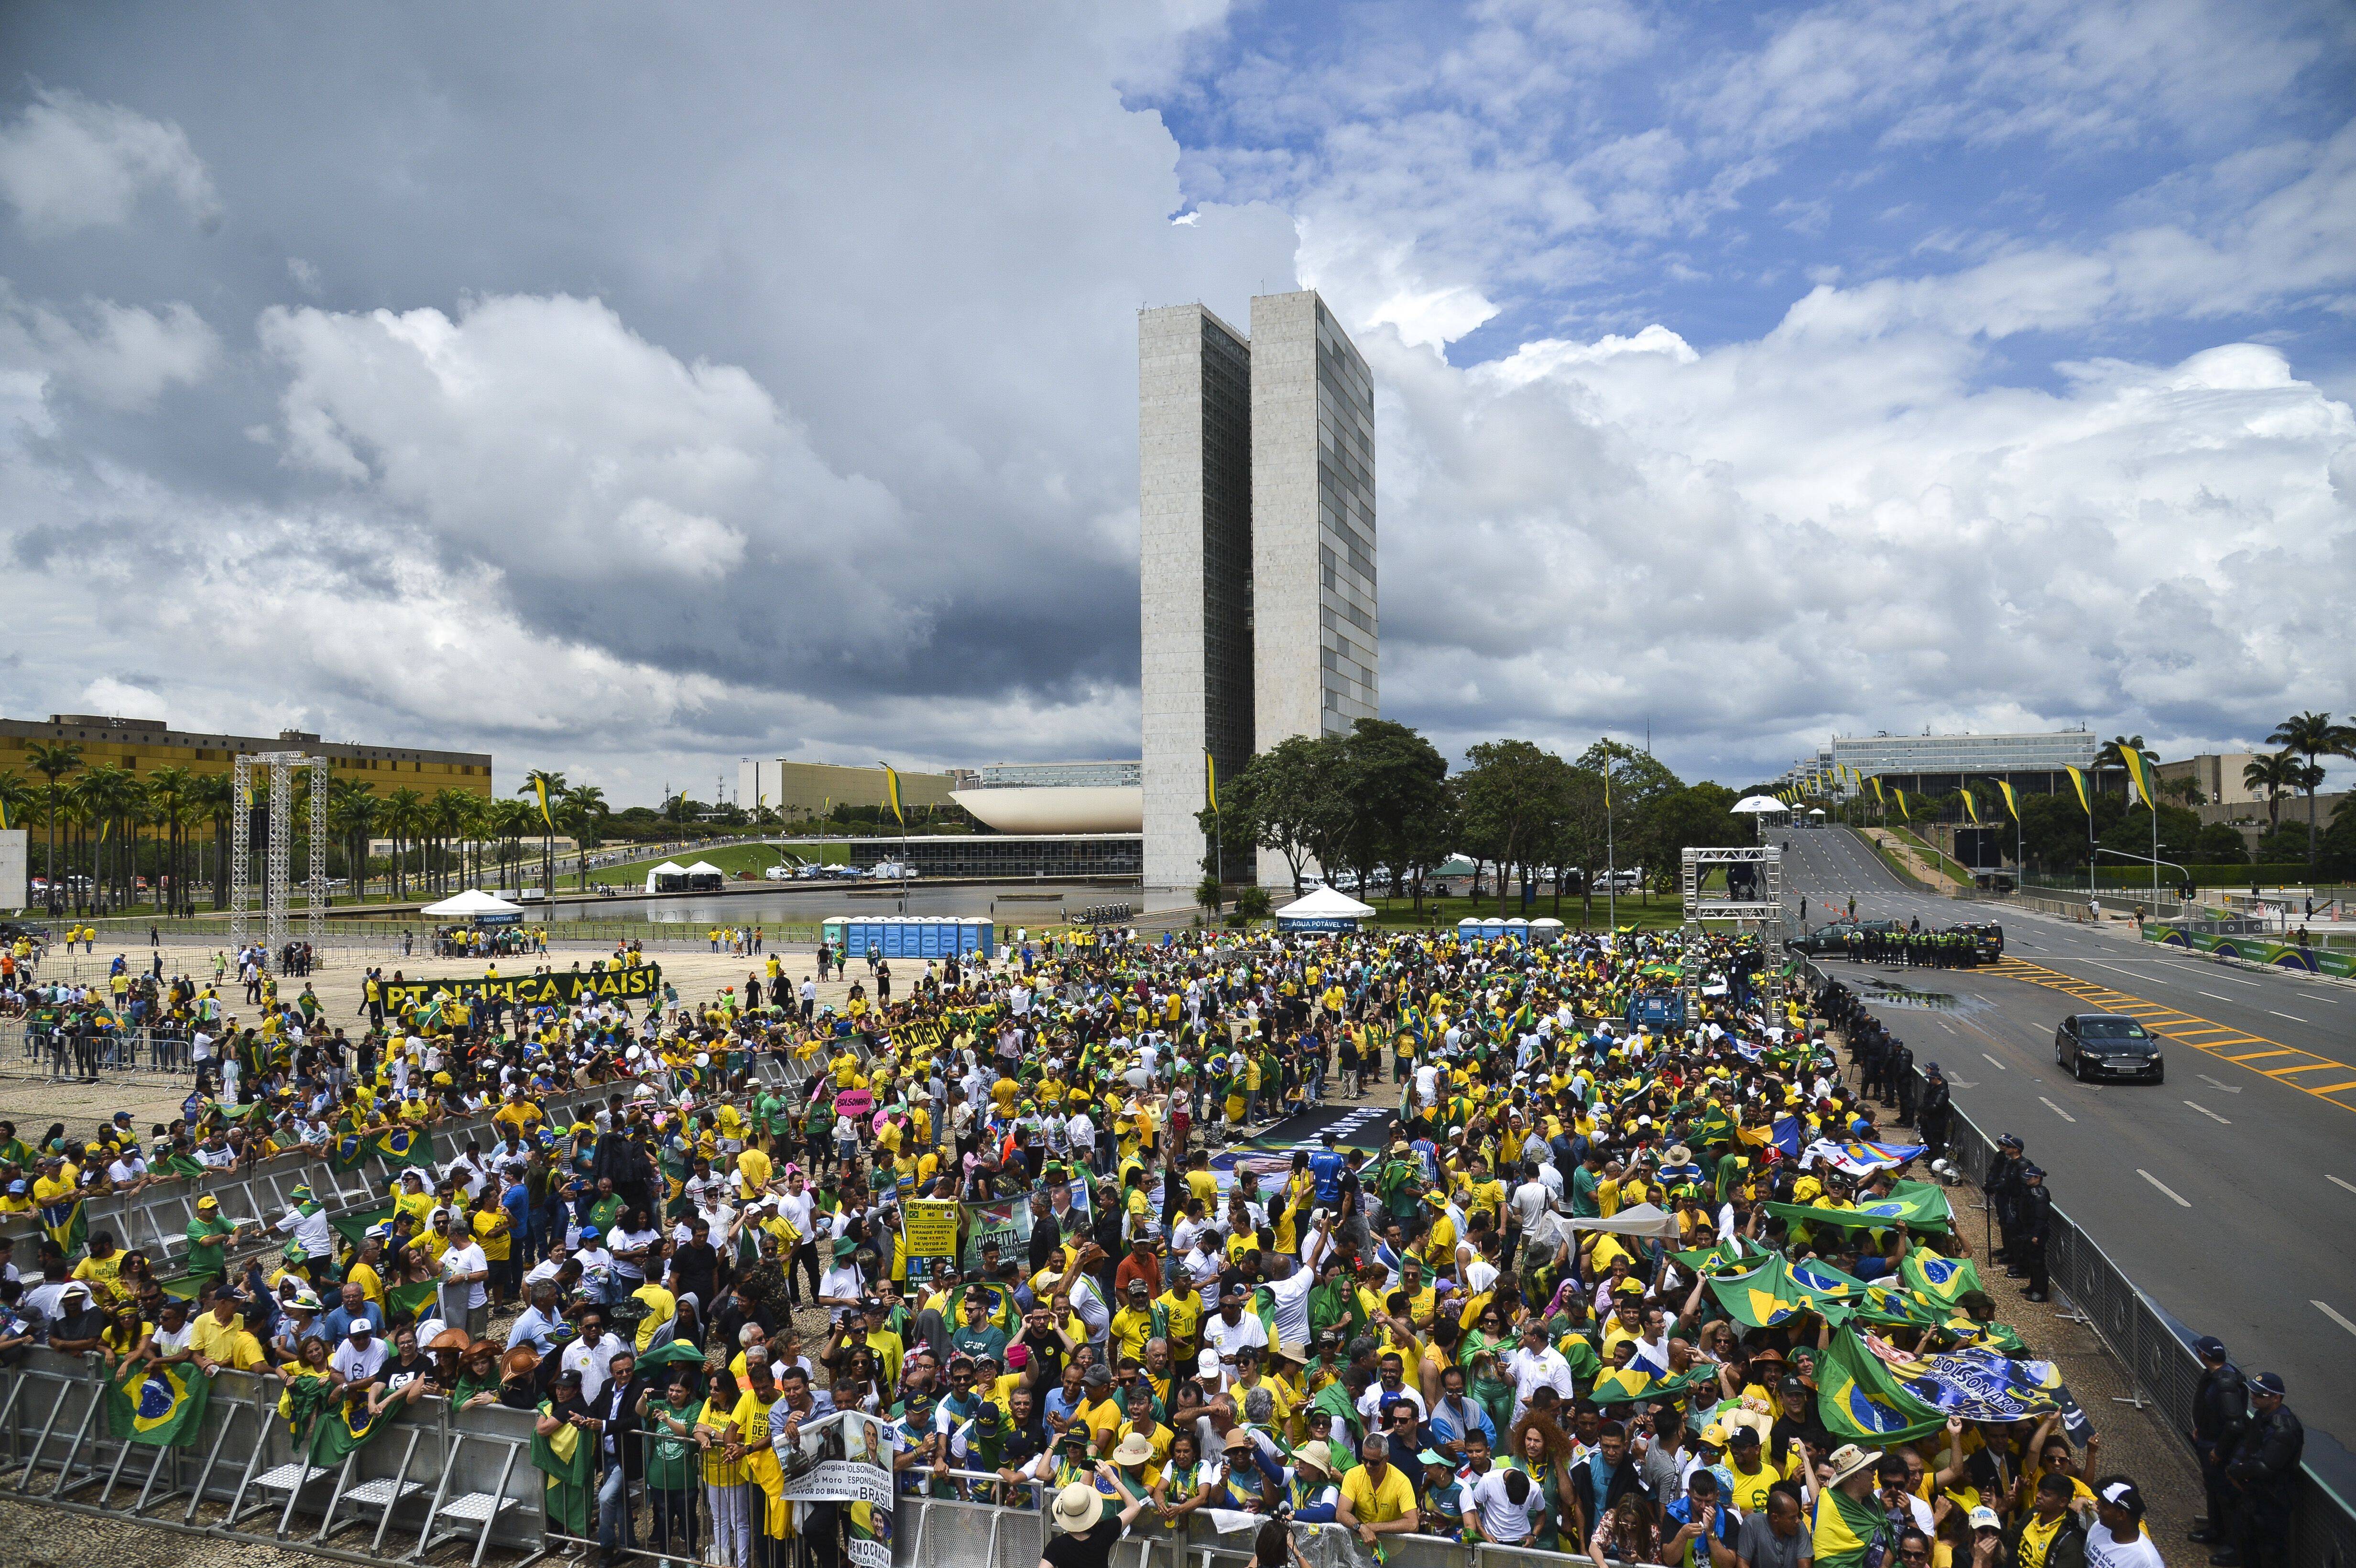 Público aguarda cerimônia de posse de Bolsonaro na Esplanada dos Ministérios. Foto: Marcelo Camargo/Agência Brasil - 1.1.19